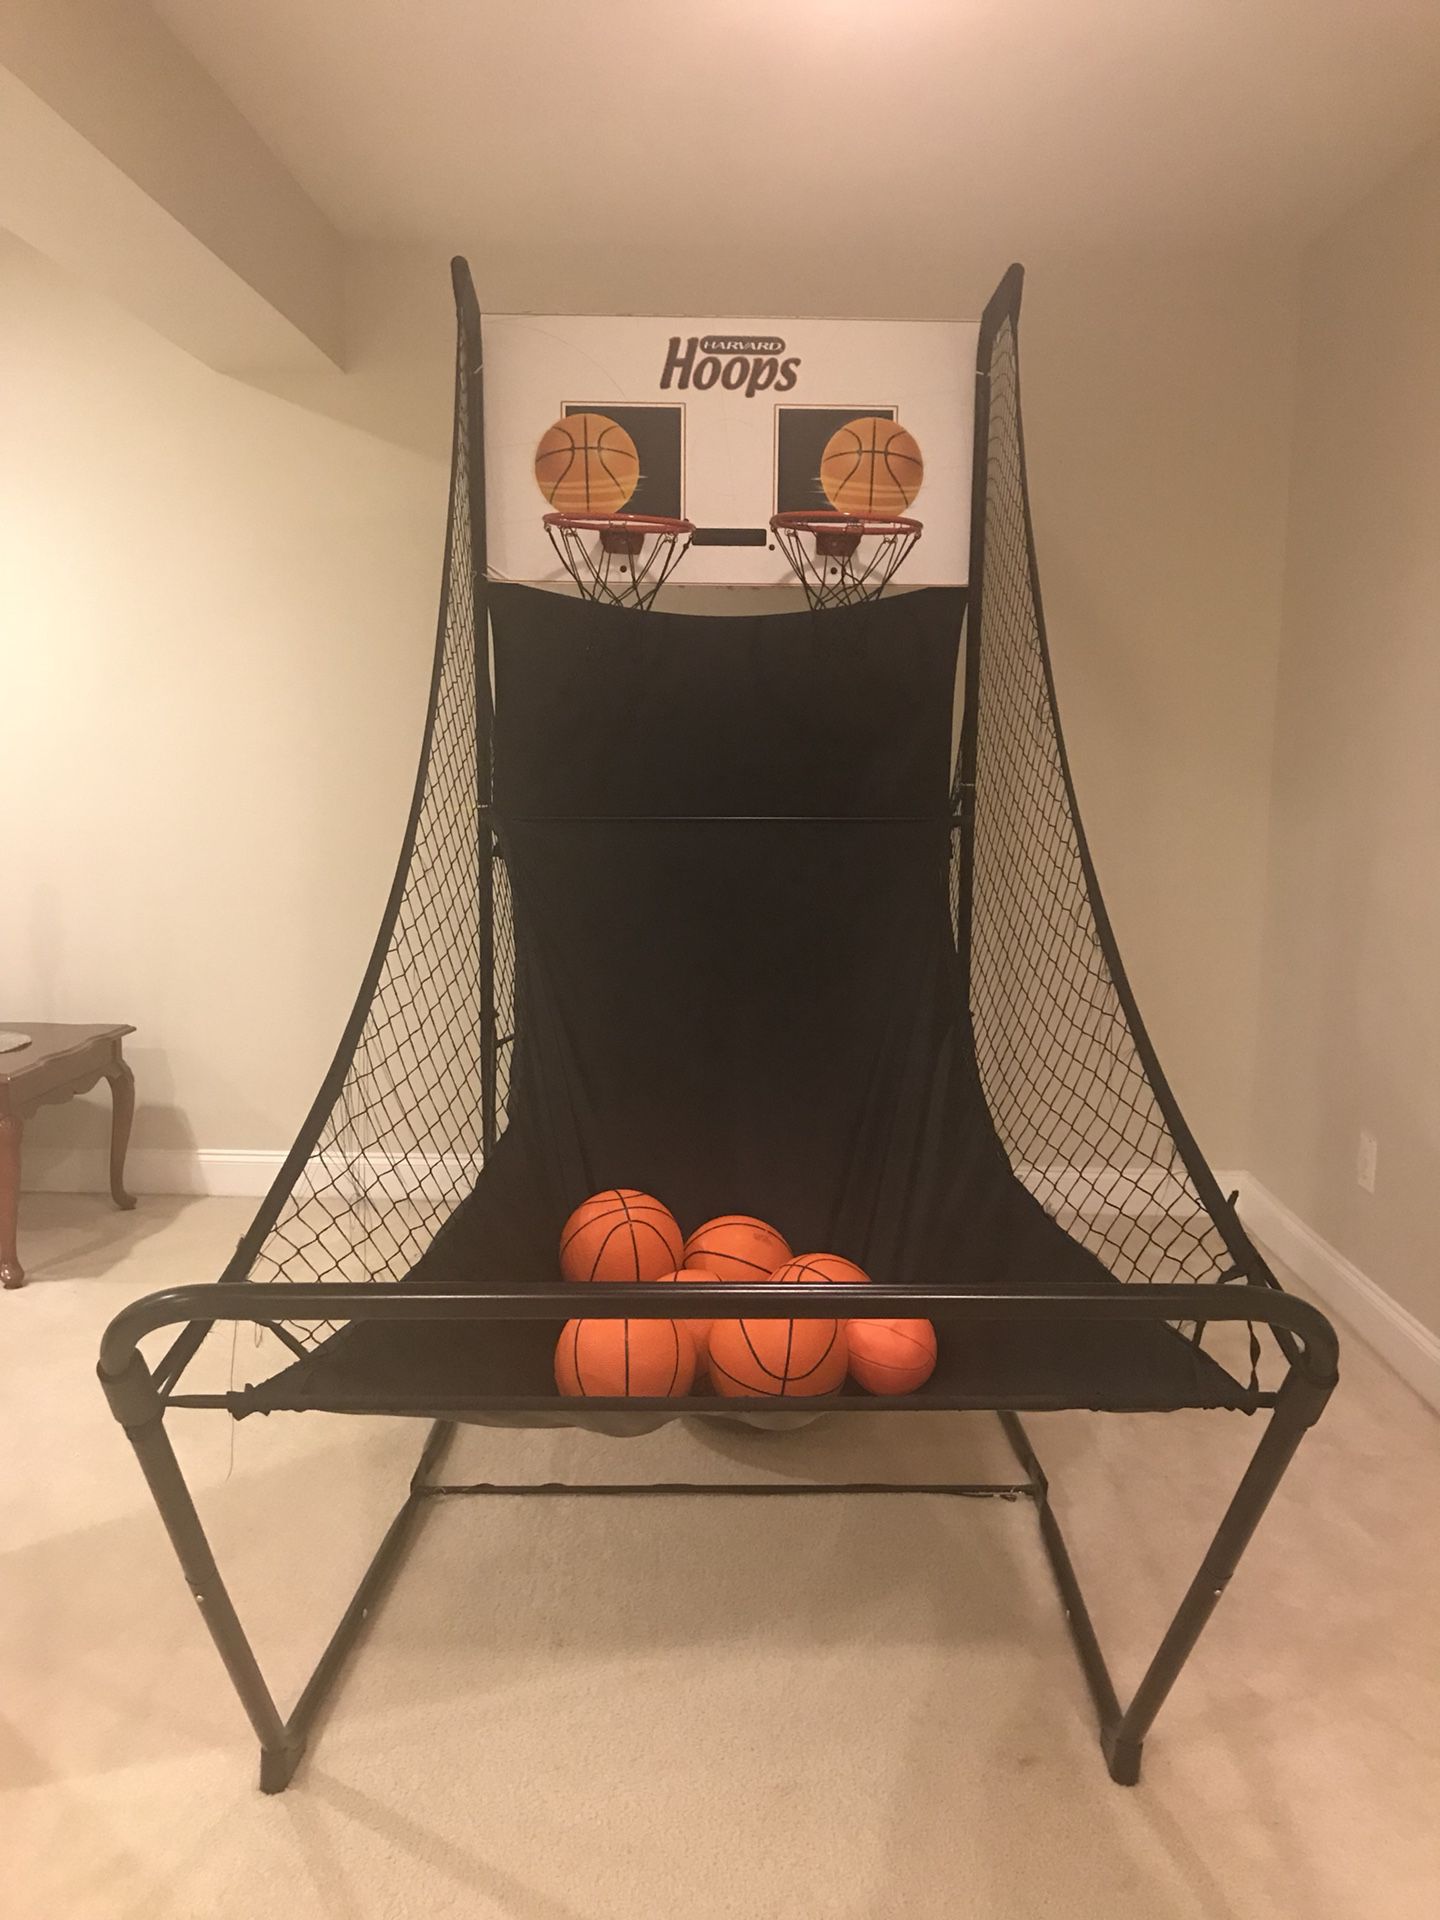 Arcade basketball hoop and air hockey table